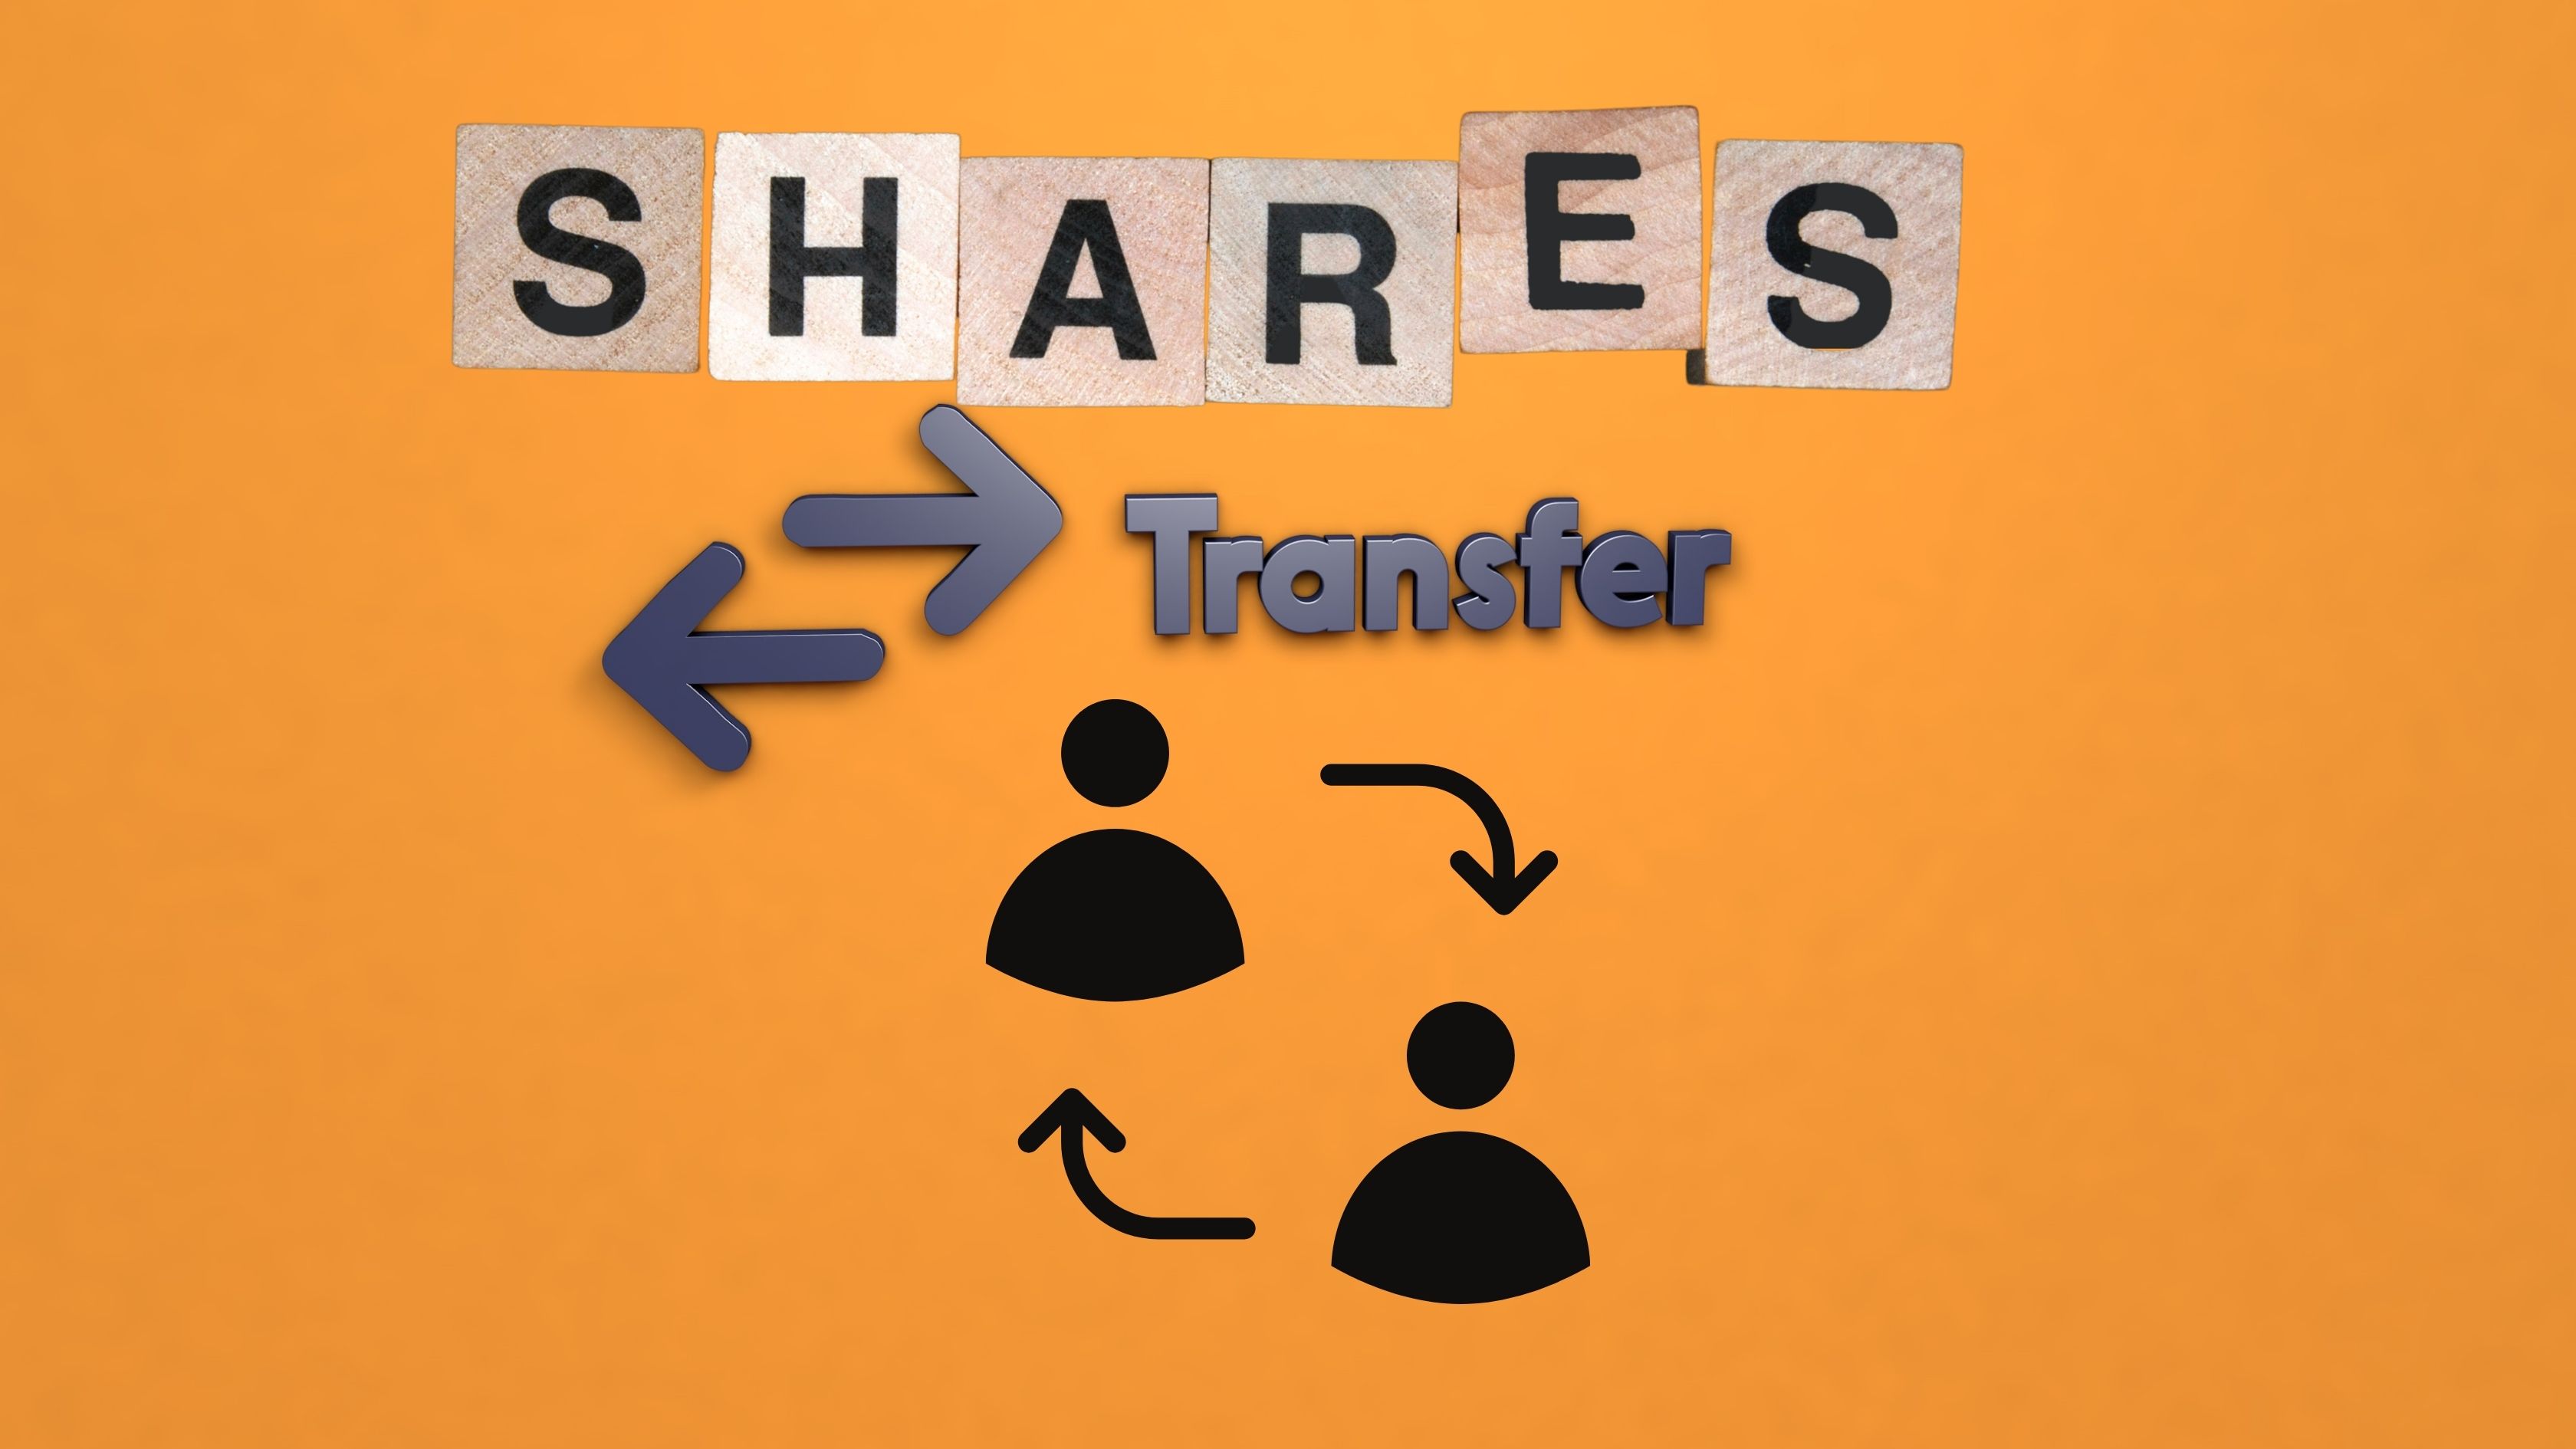 Shares transfer